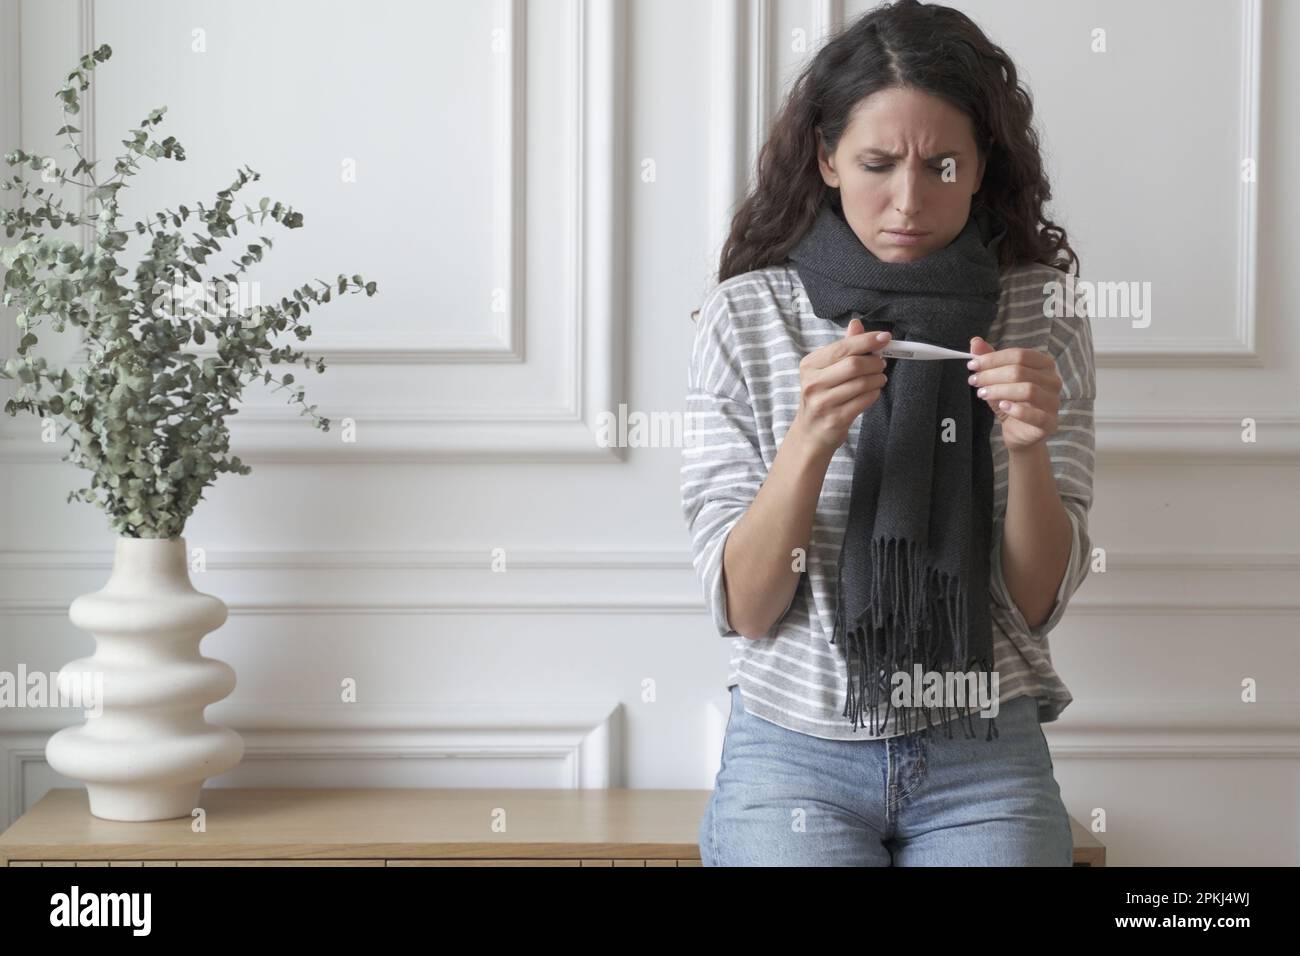 Ungesunde kranke junge Italienerin, die ein Thermometer hält und hohe Temperaturen misst, während sie zu Hause drinnen steht, unglückliche besorgte weibliche Gefühl Stockfoto